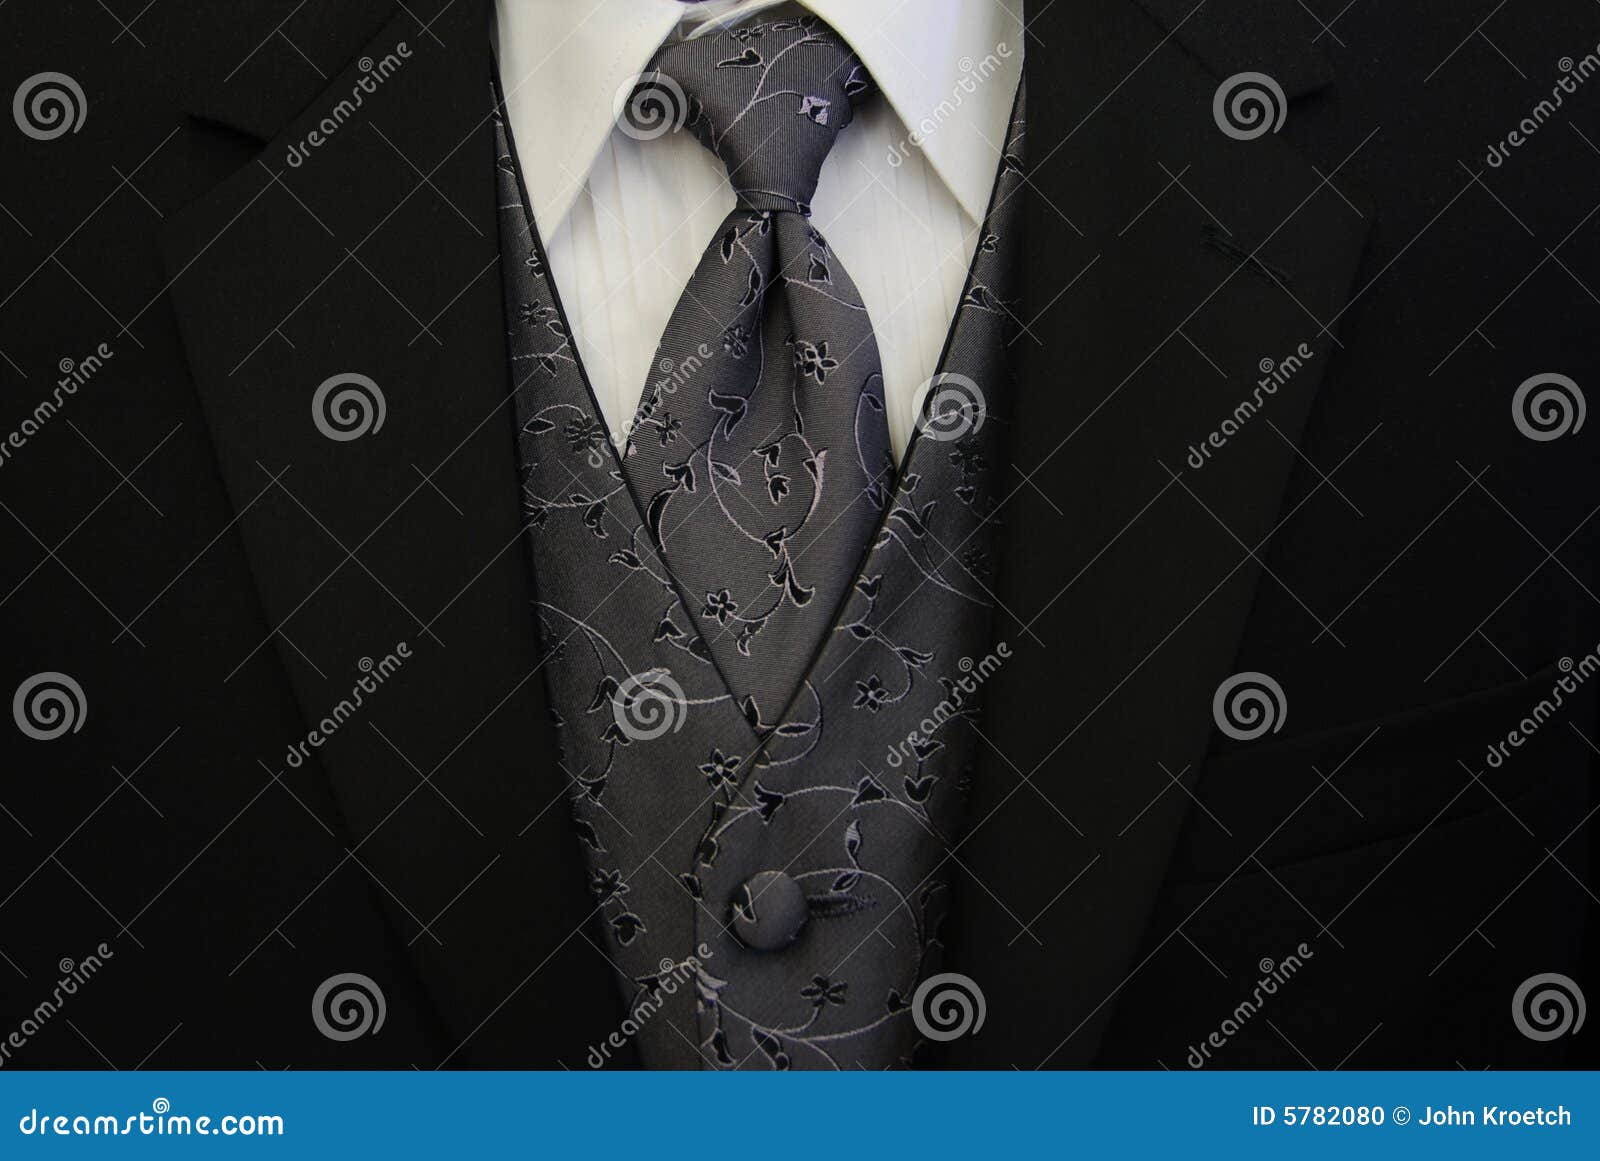 black tuxedo silver tie and vest